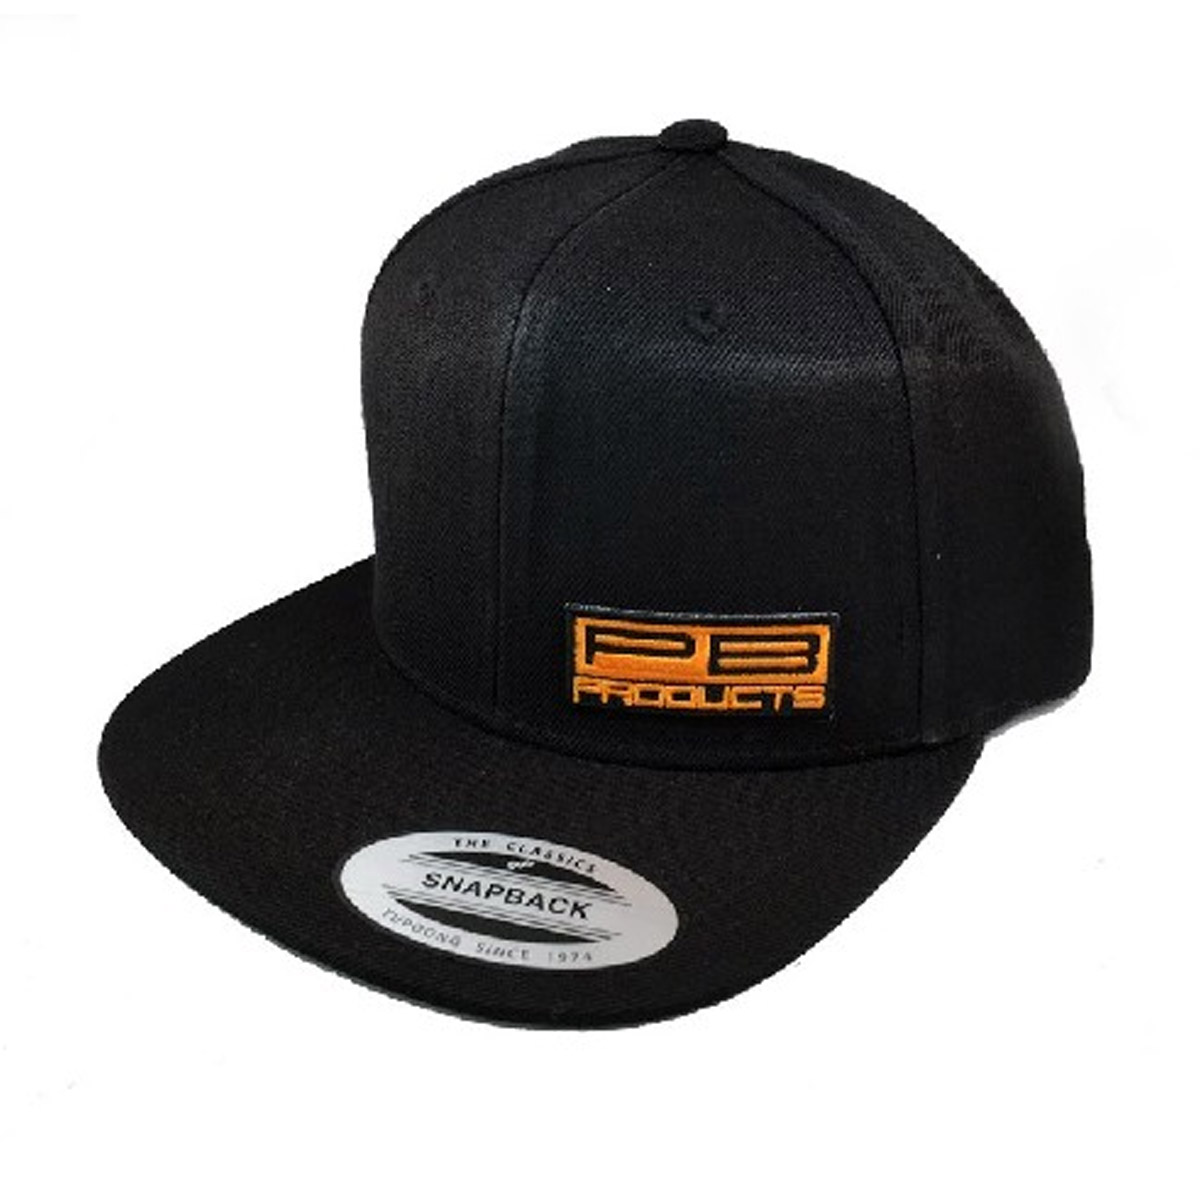 PB Products Snapback Cap Black